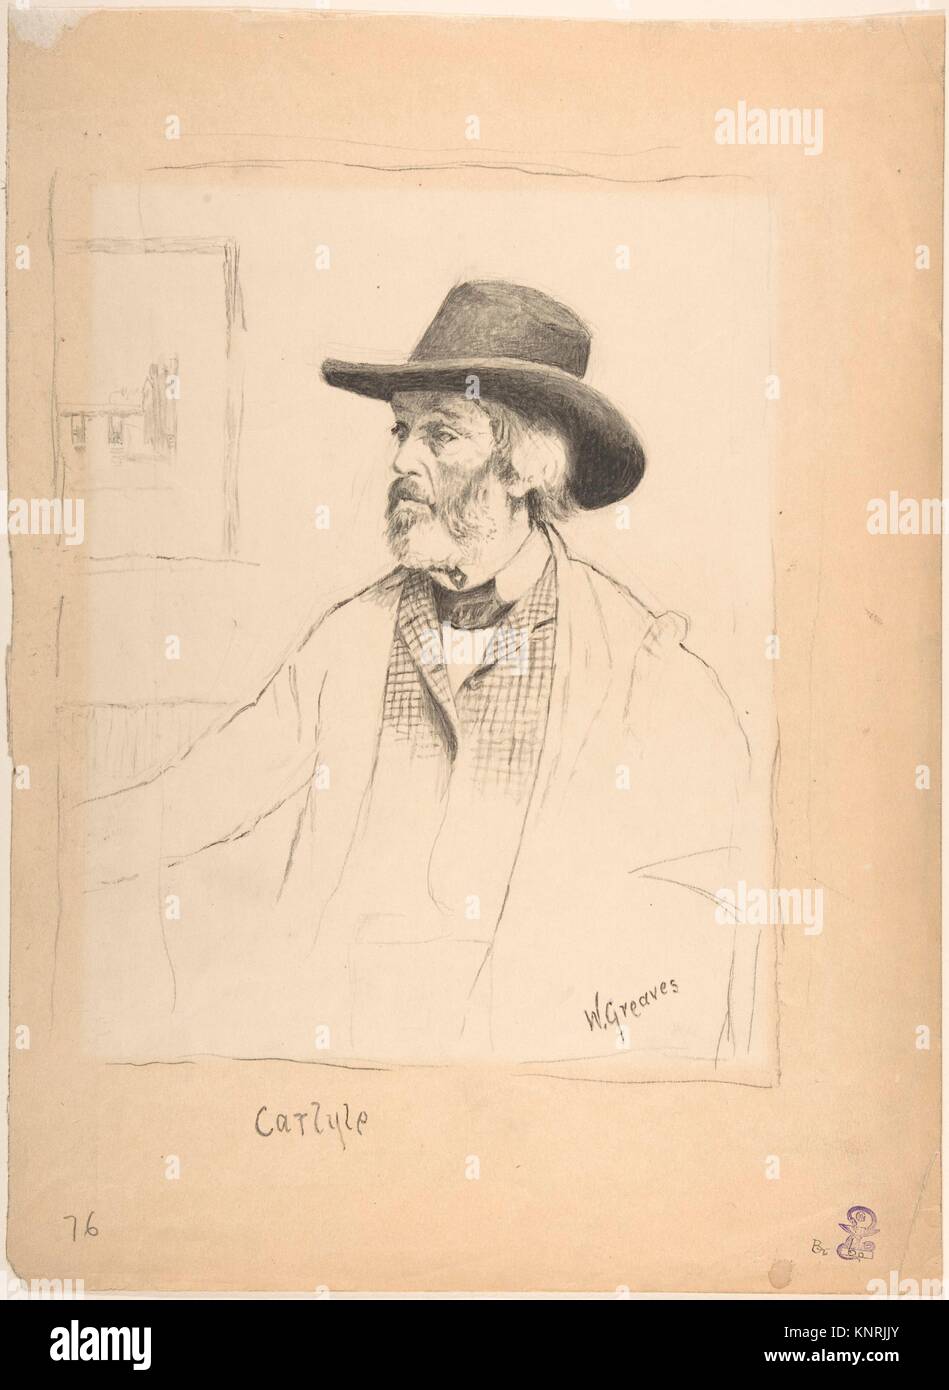 Ritratto di Thomas Carlyle. Artista: Walter ciccioli (British, Londra Londra 1841-1930); Sitter: Thomas Carlyle (British, Annandale, Scozia 1795-1881 Foto Stock